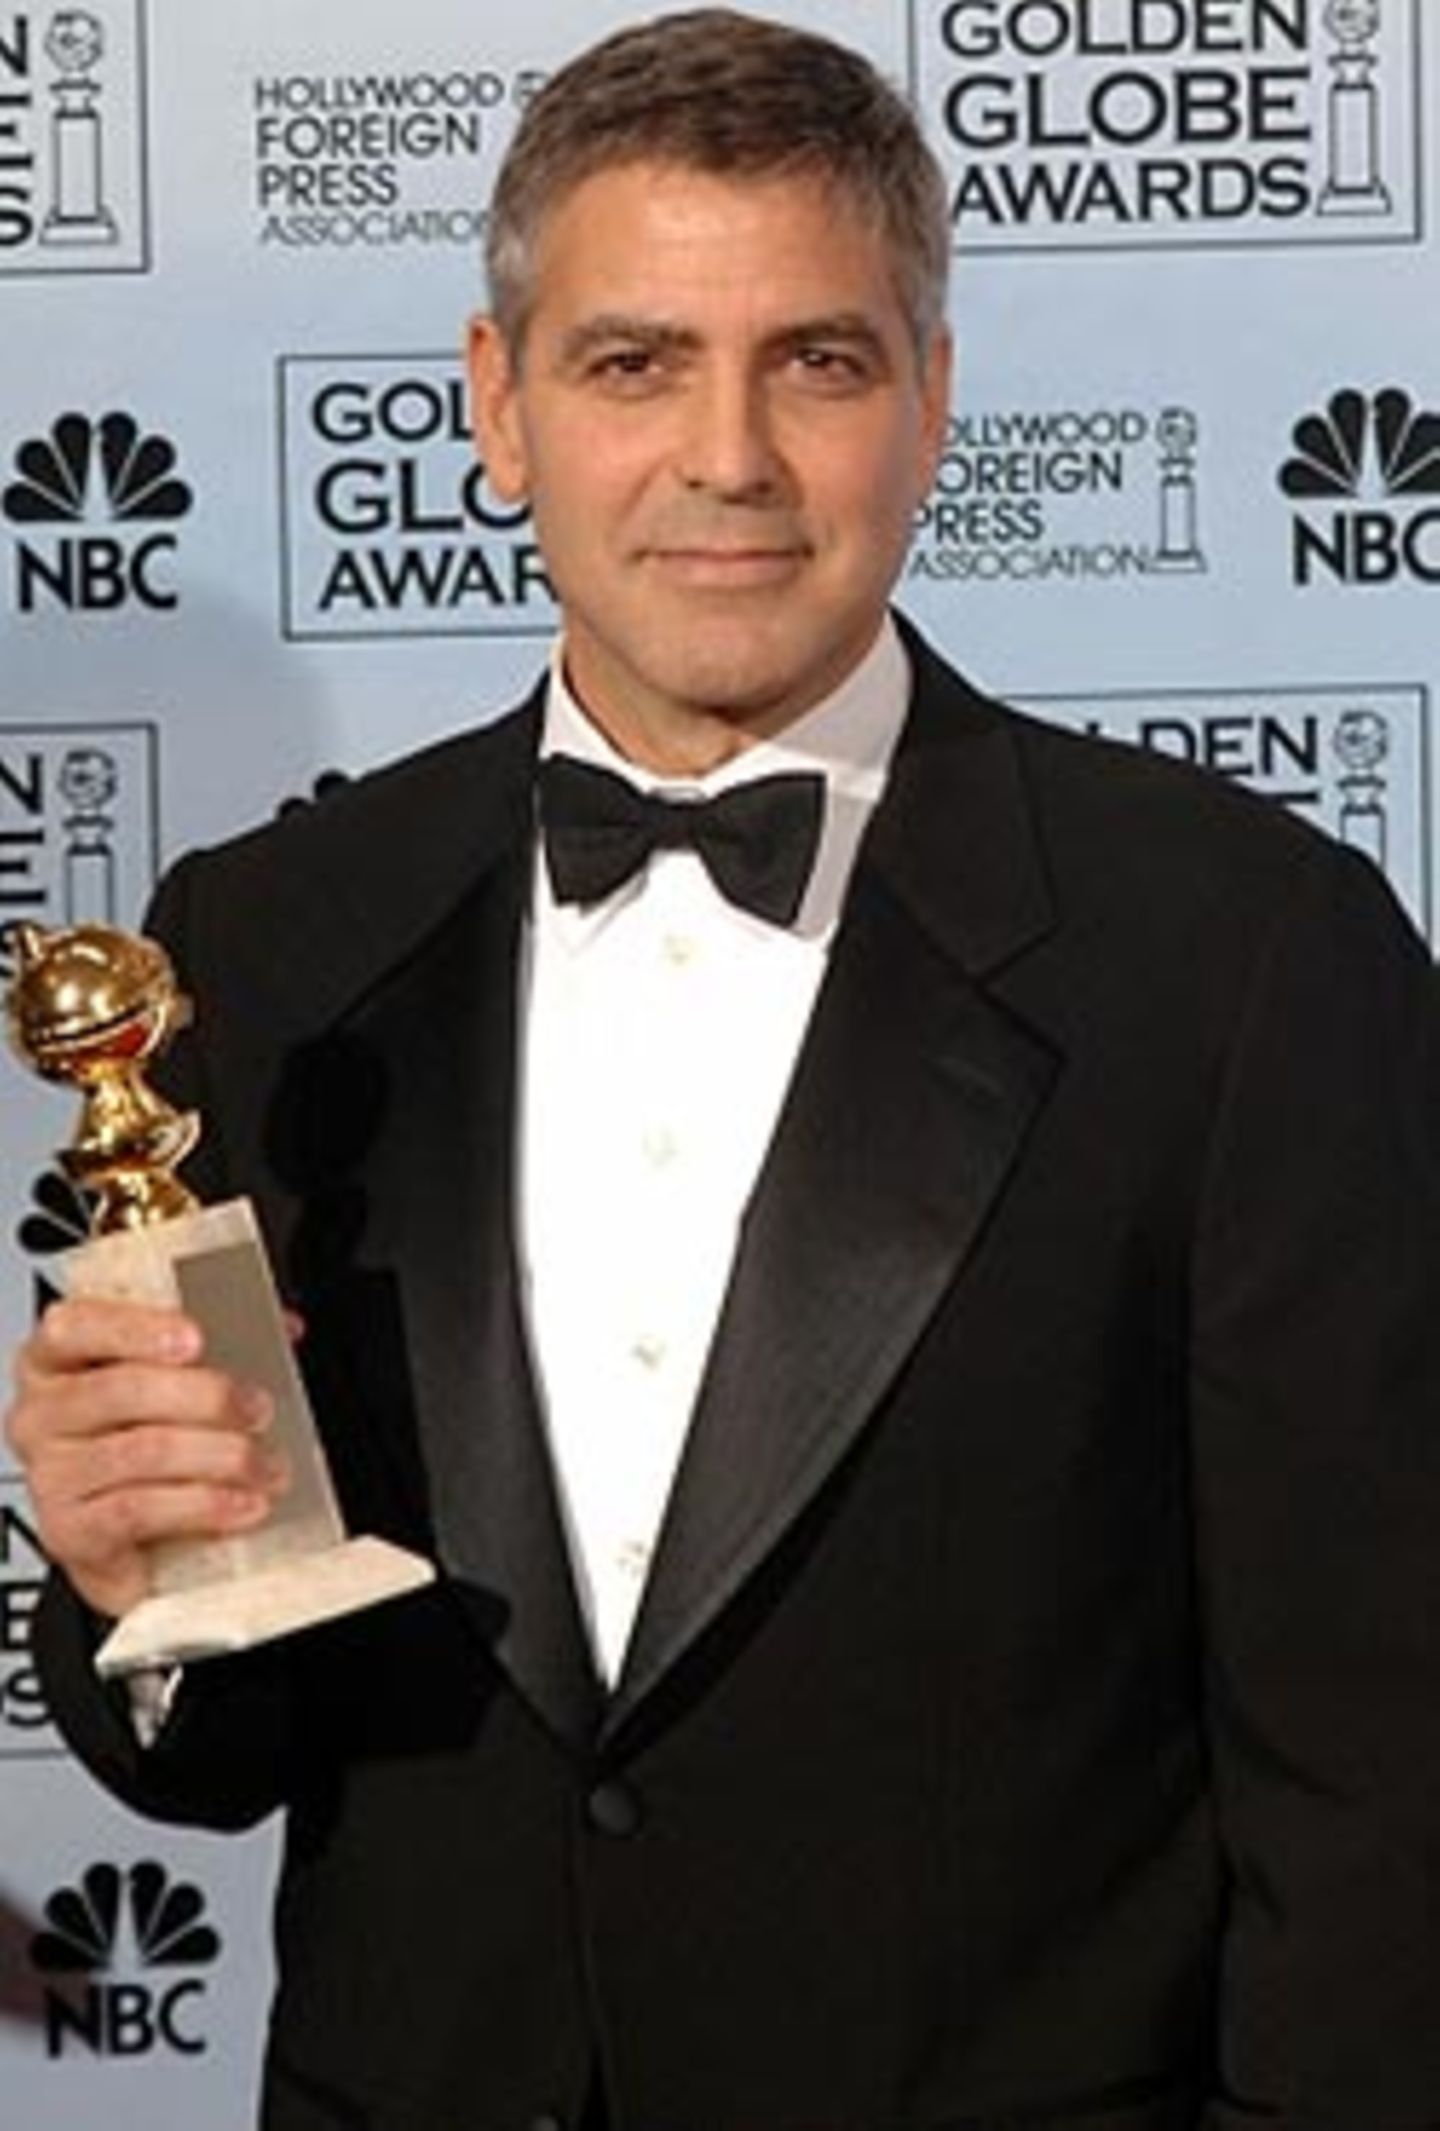 George Clooney erhielt den Preis als bester Nebendarsteller für seine Rolle in "Syriana".